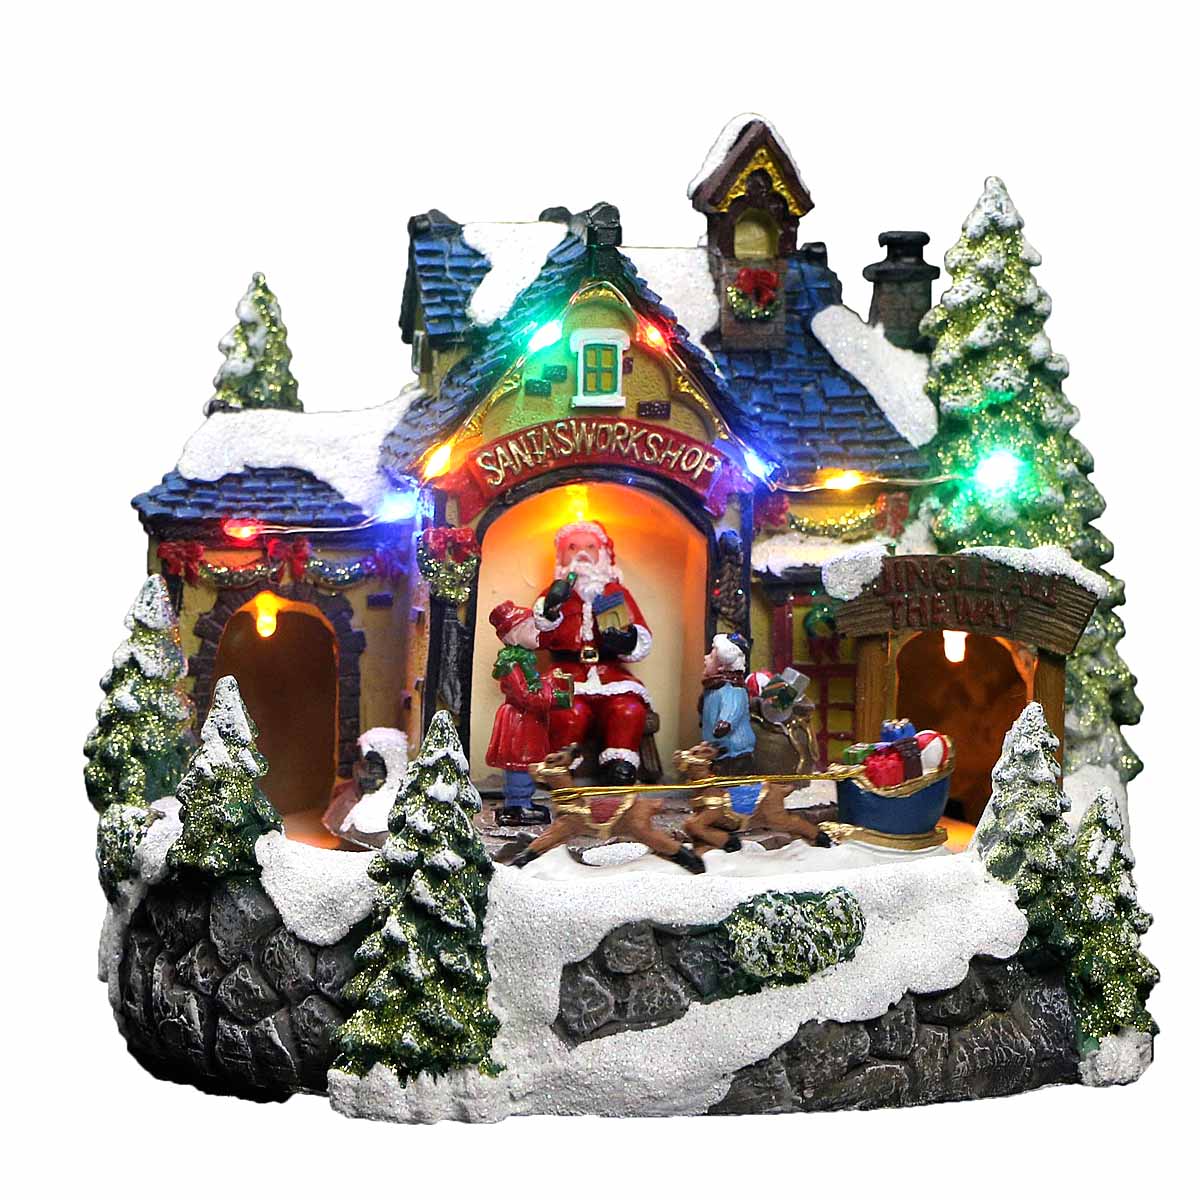 Villaggi di Natale – Il negozio di Babbo Natale